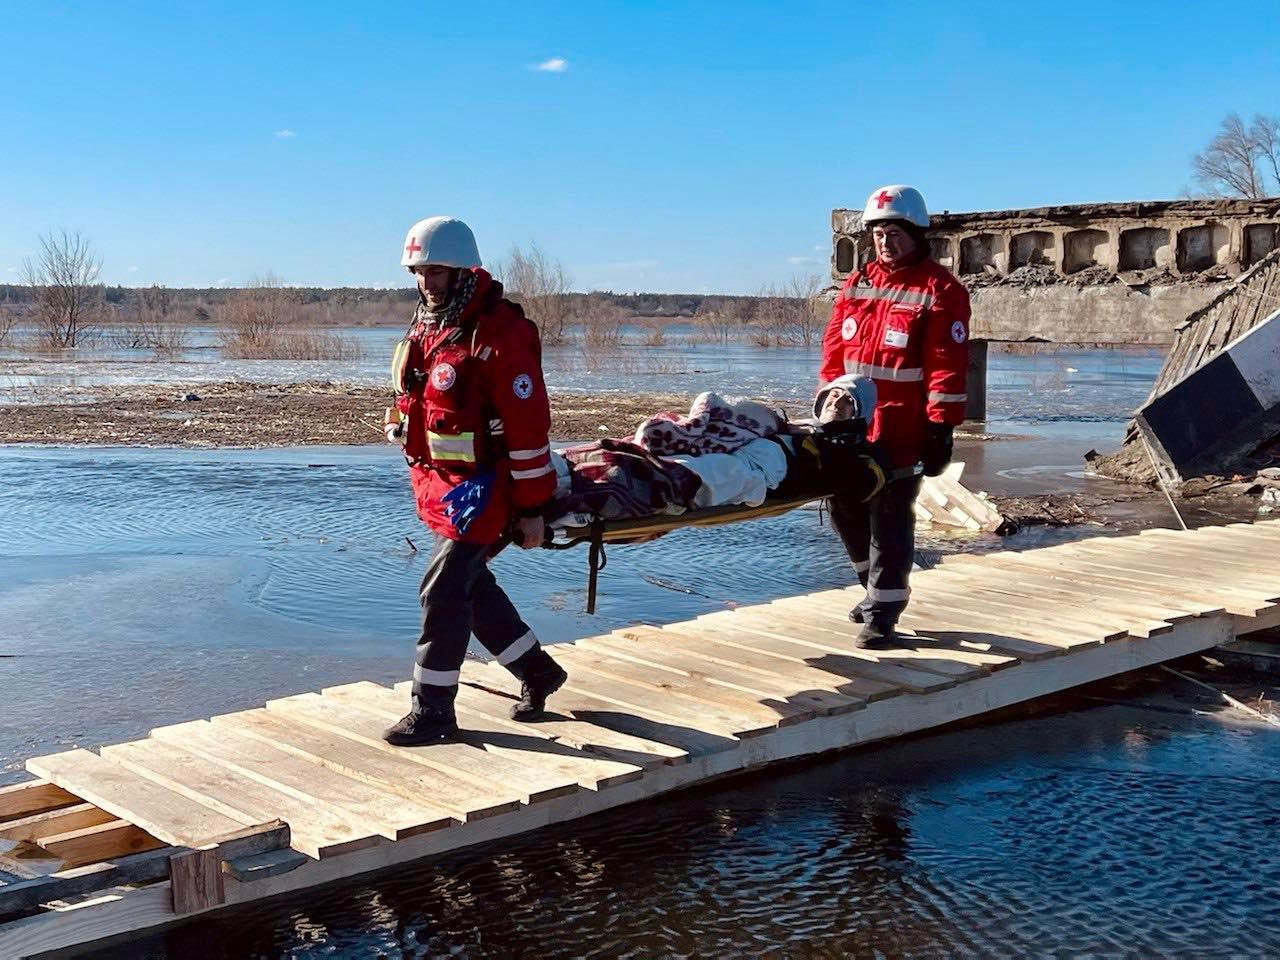 Deux bénévoles de la Croix-Rouge ukrainienne évacuent une personne blessée recouverte d’une couverture sur un brancard. Ils traversent un pont provisoire en bois. Les deux bénévoles portent le casque blanc et la veste rouge de la Croix-Rouge. 